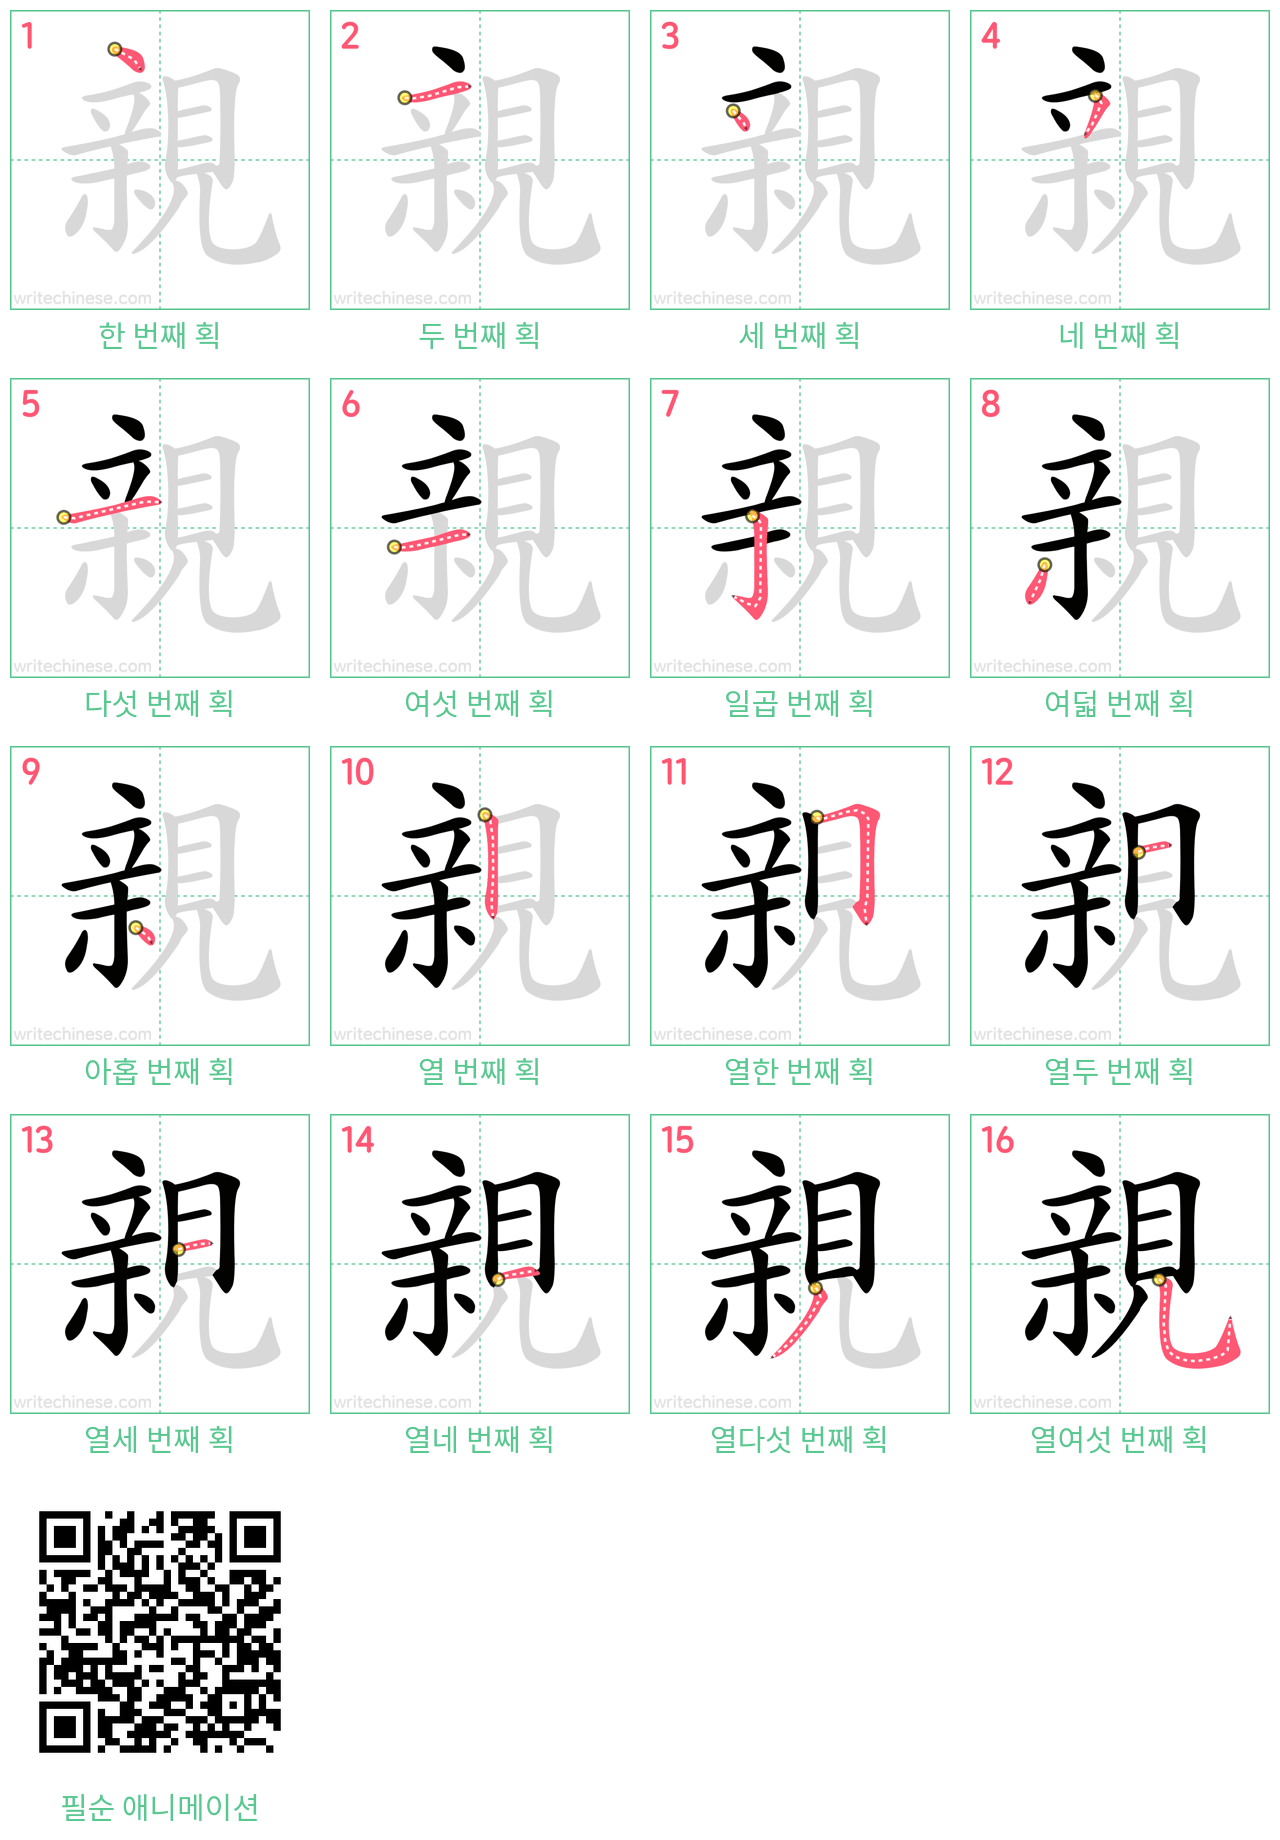 親 step-by-step stroke order diagrams